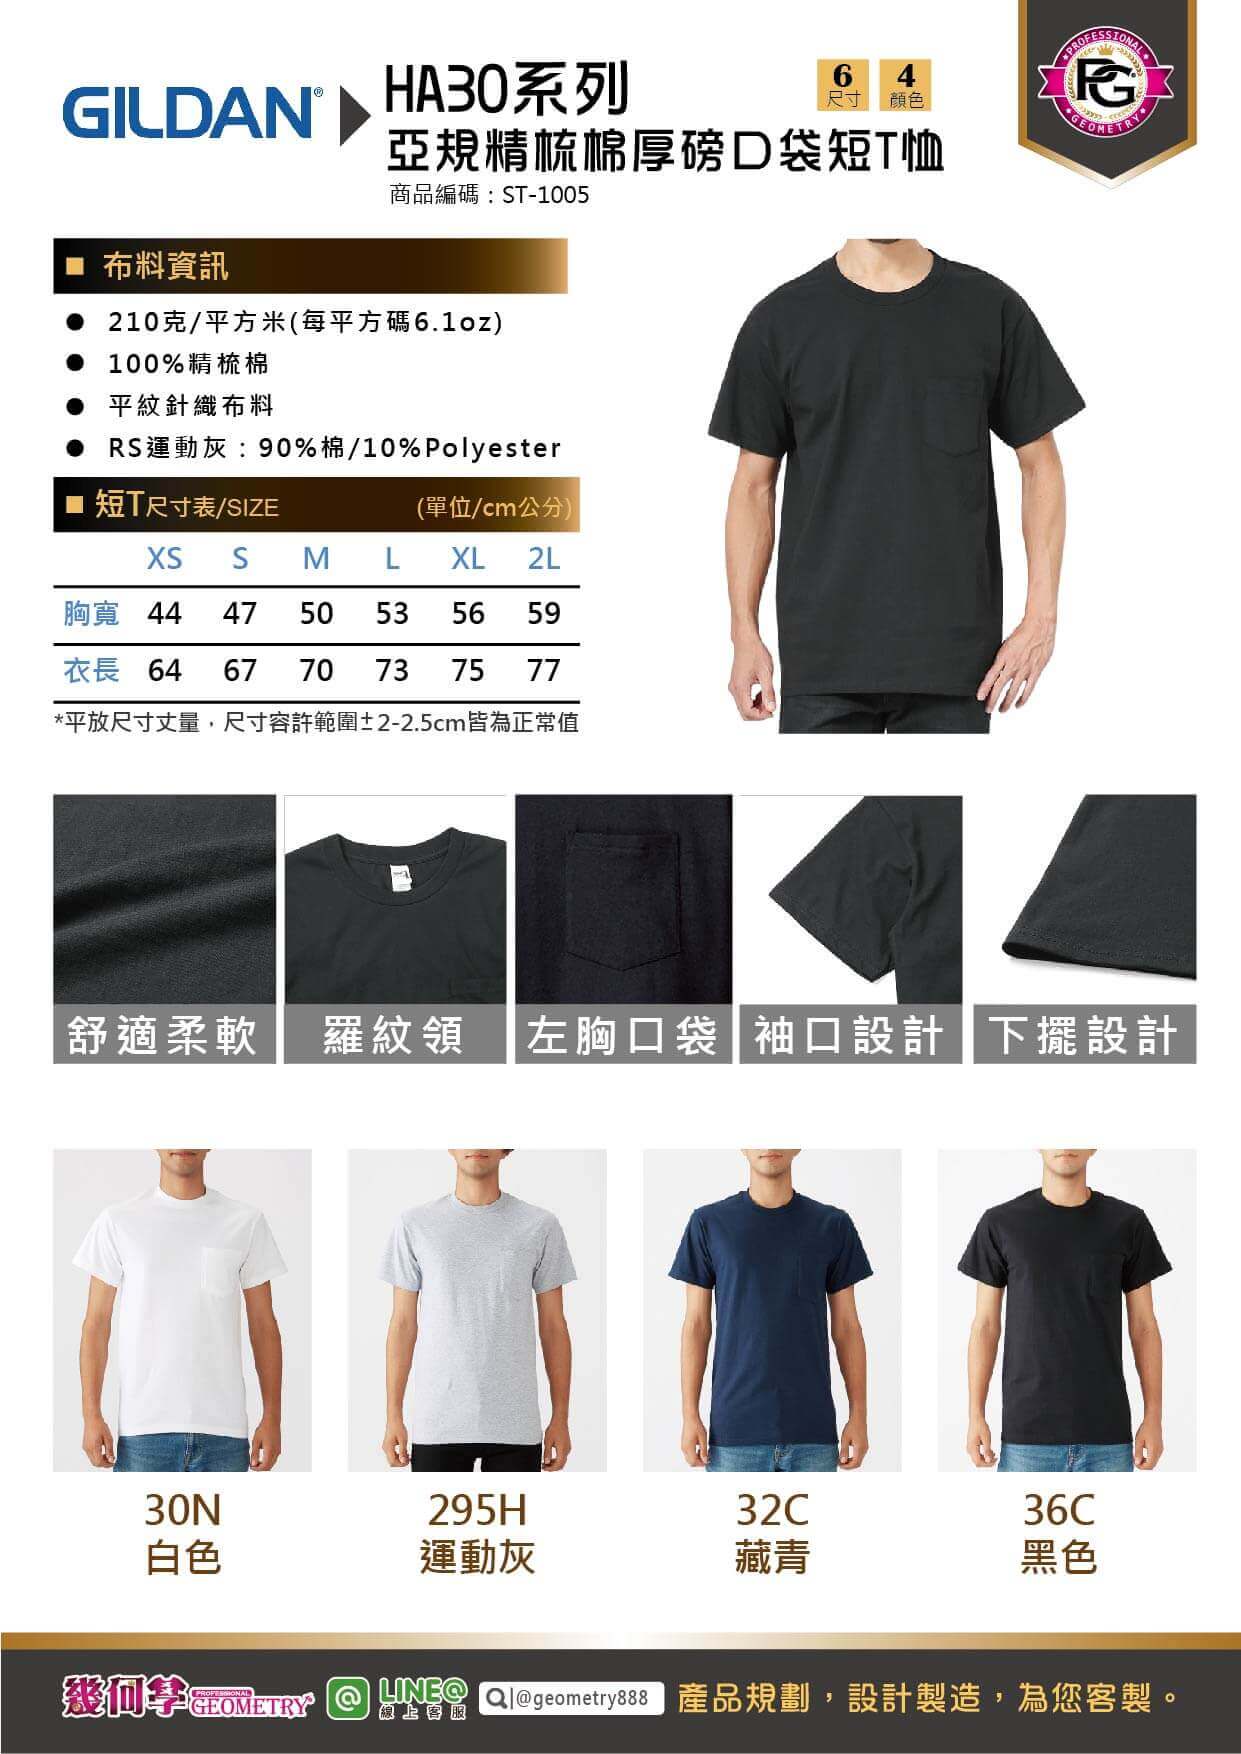 吉爾登 HA30系列亞規精梳棉厚磅口袋短T恤